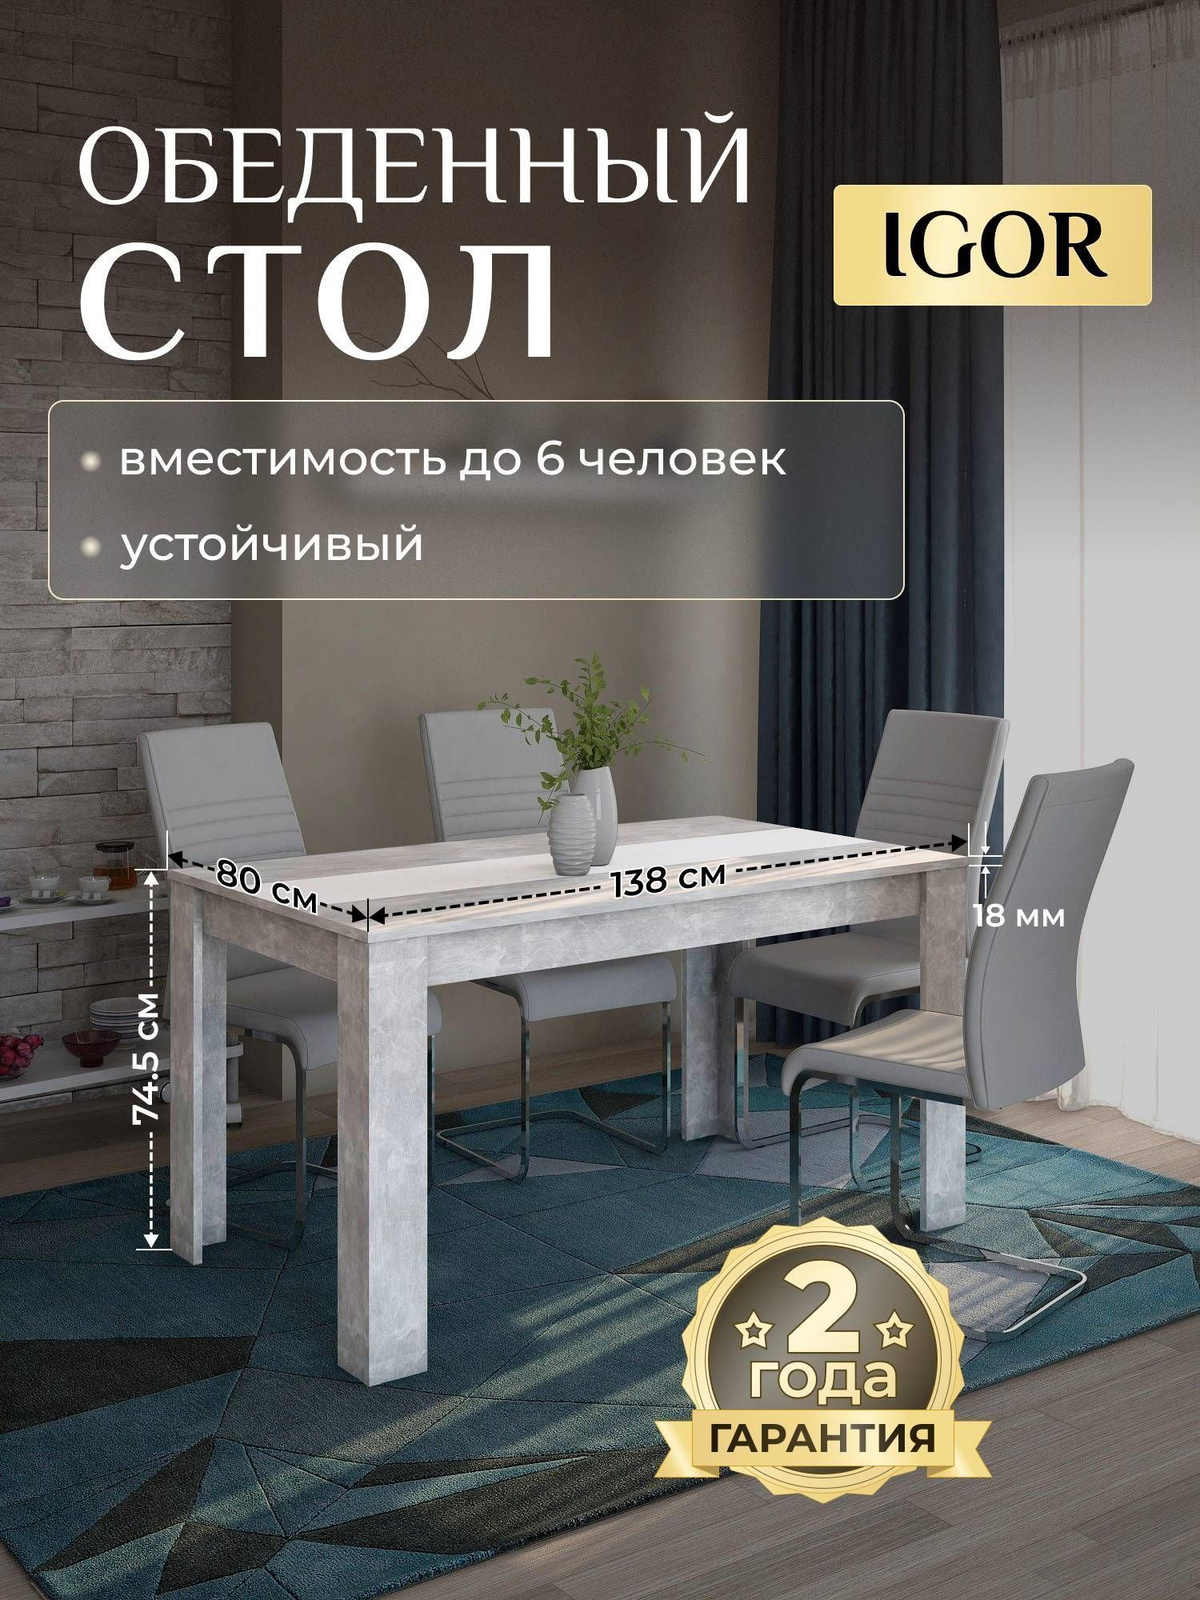 Обеденный стол IGOR